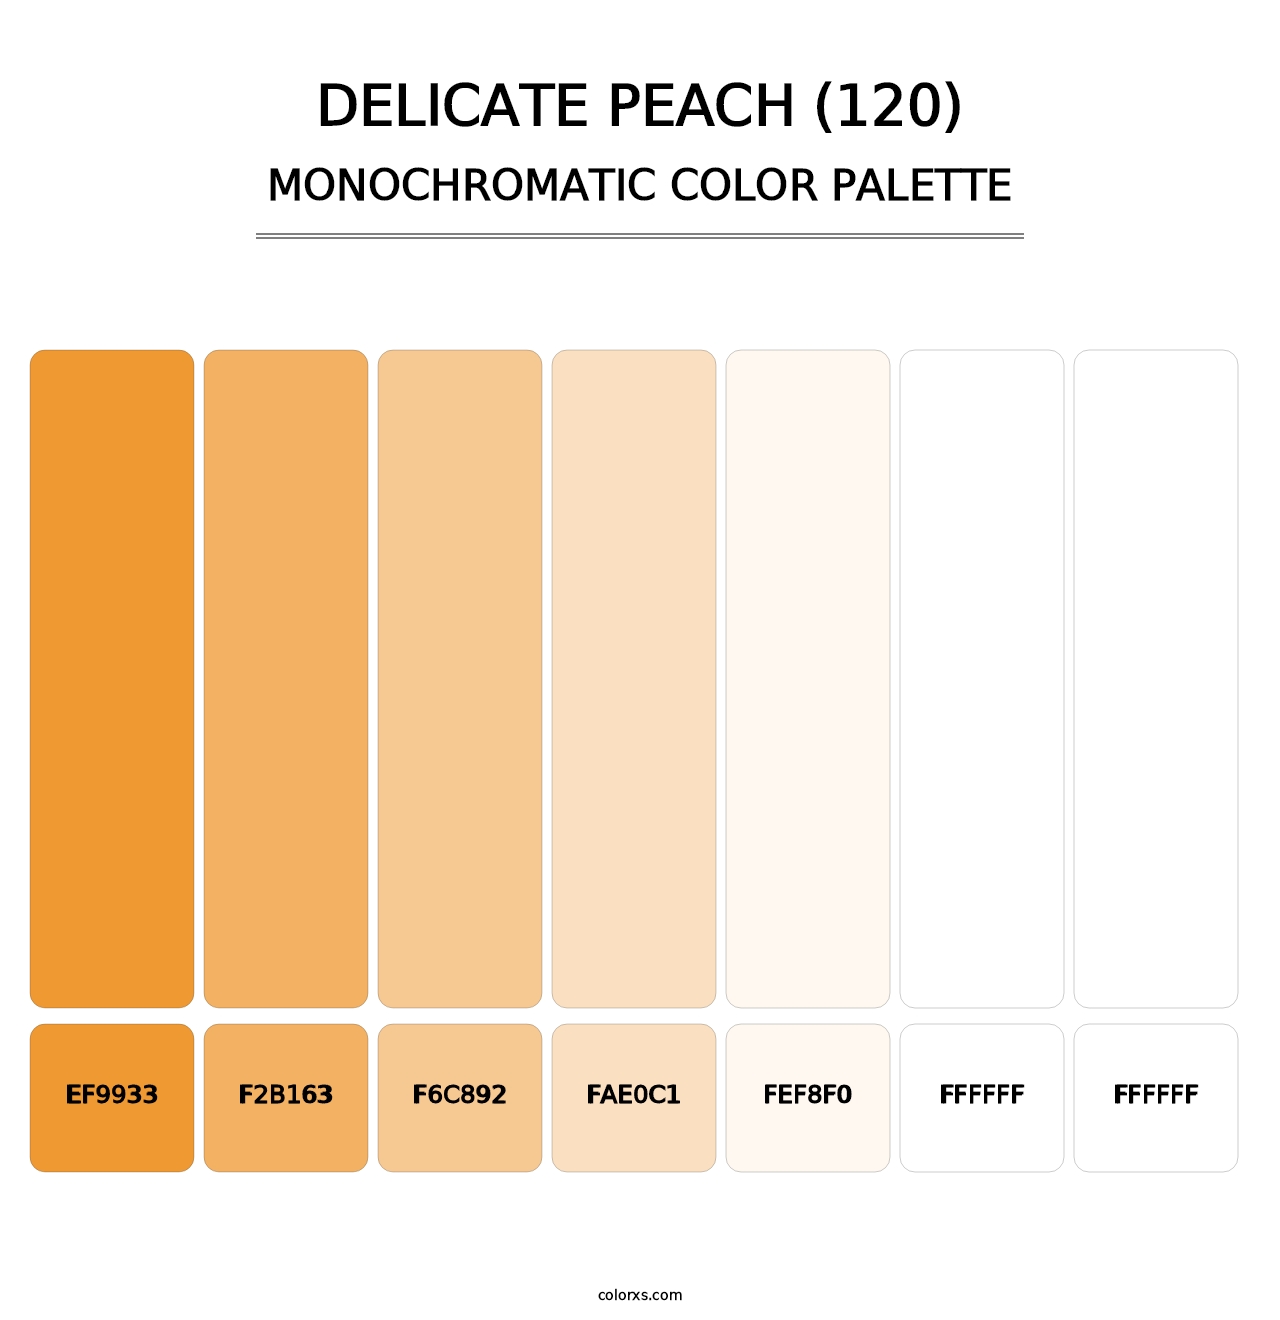 Delicate Peach (120) - Monochromatic Color Palette